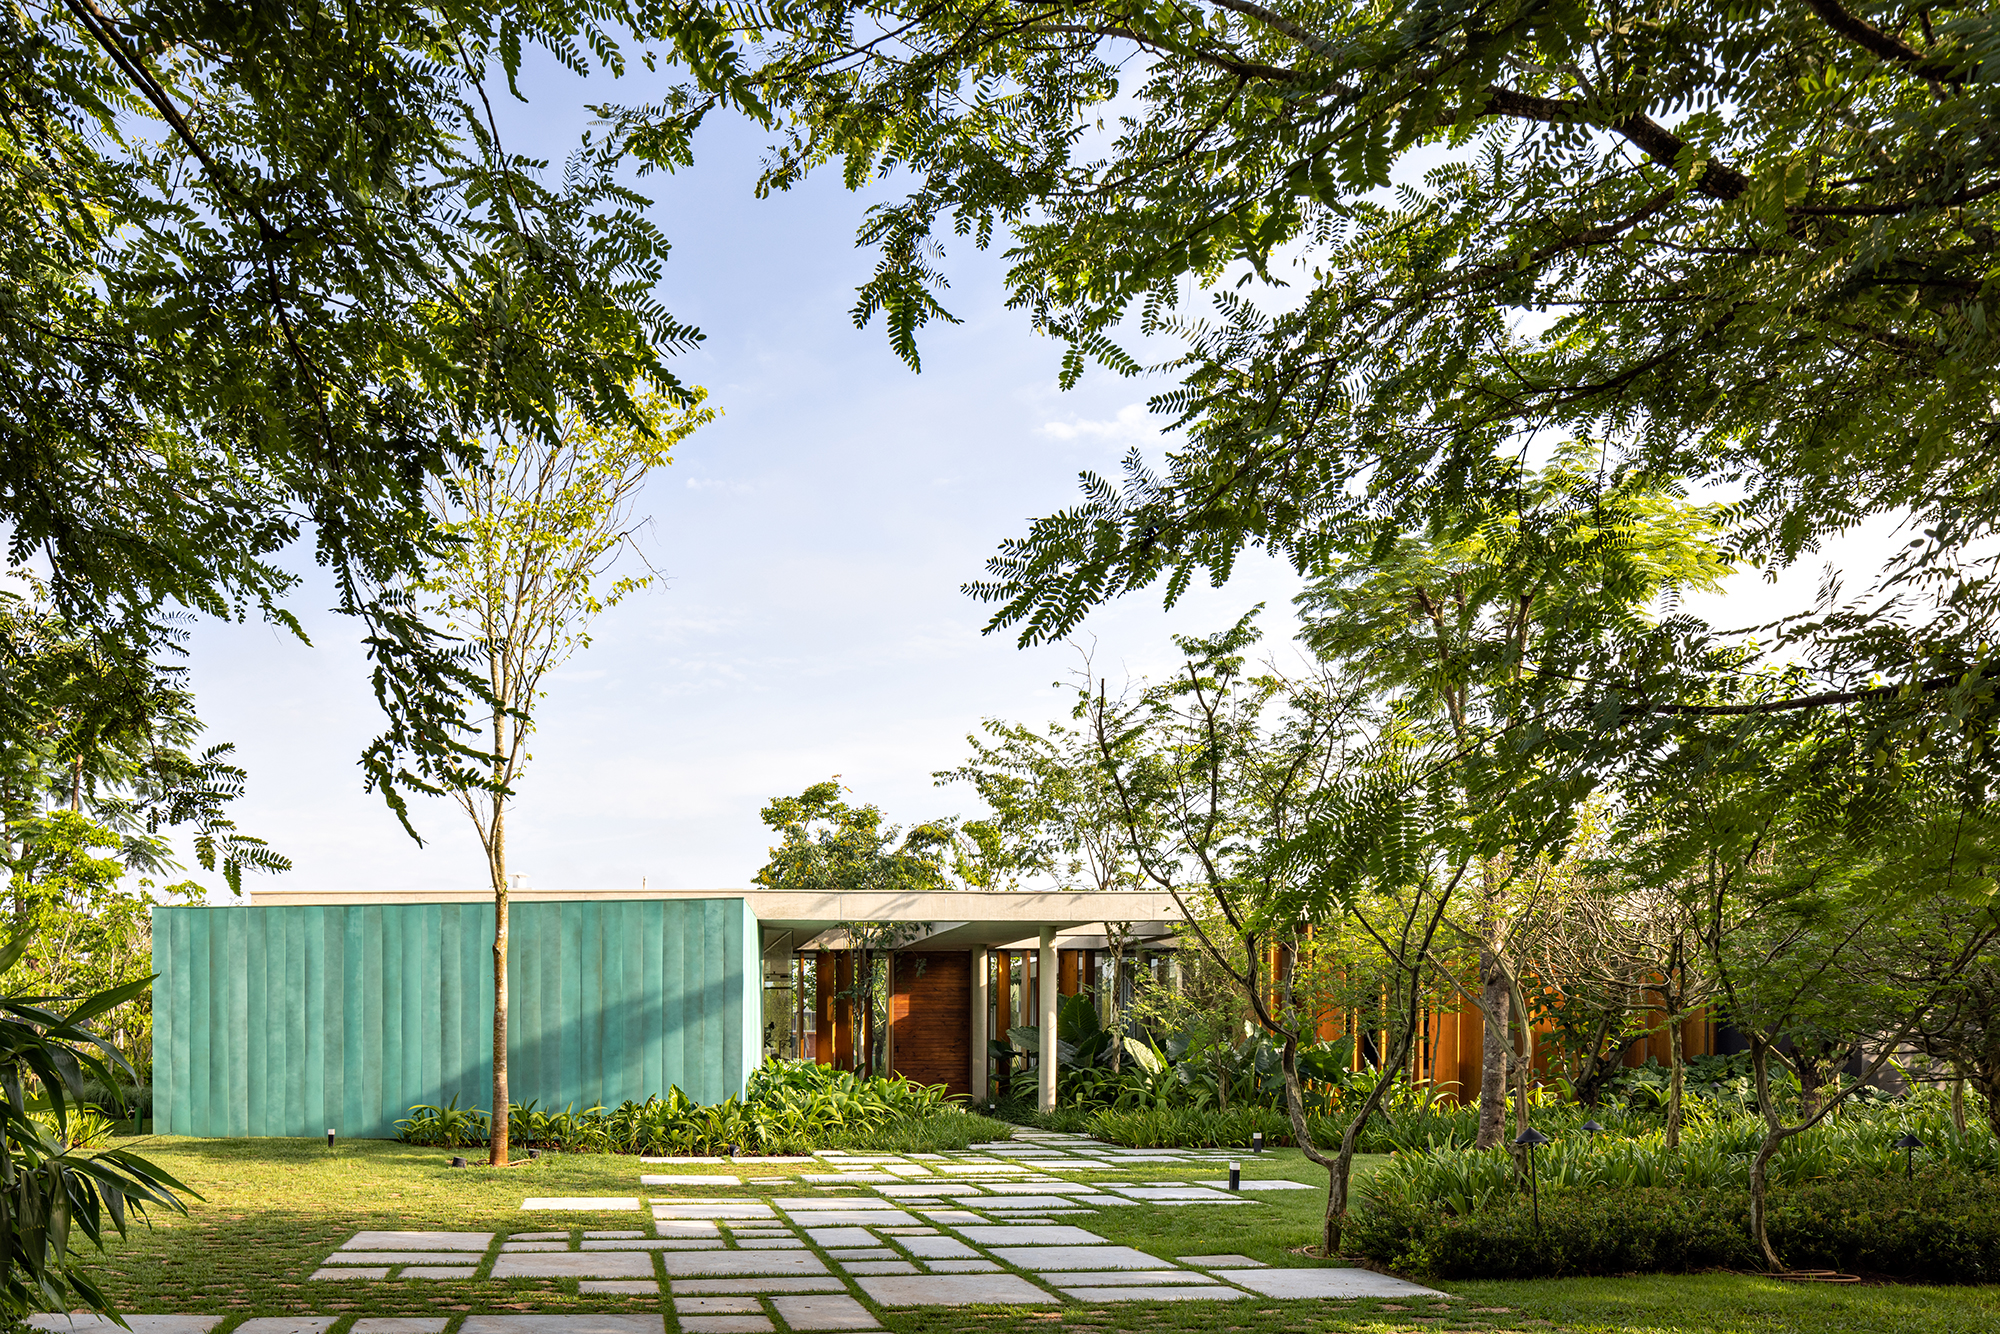 Placas de cobre oxidado e vidro integram esta casa de 653 m² à natureza, Projeto de FGMF. Na foto, fachada da casa com jardim.